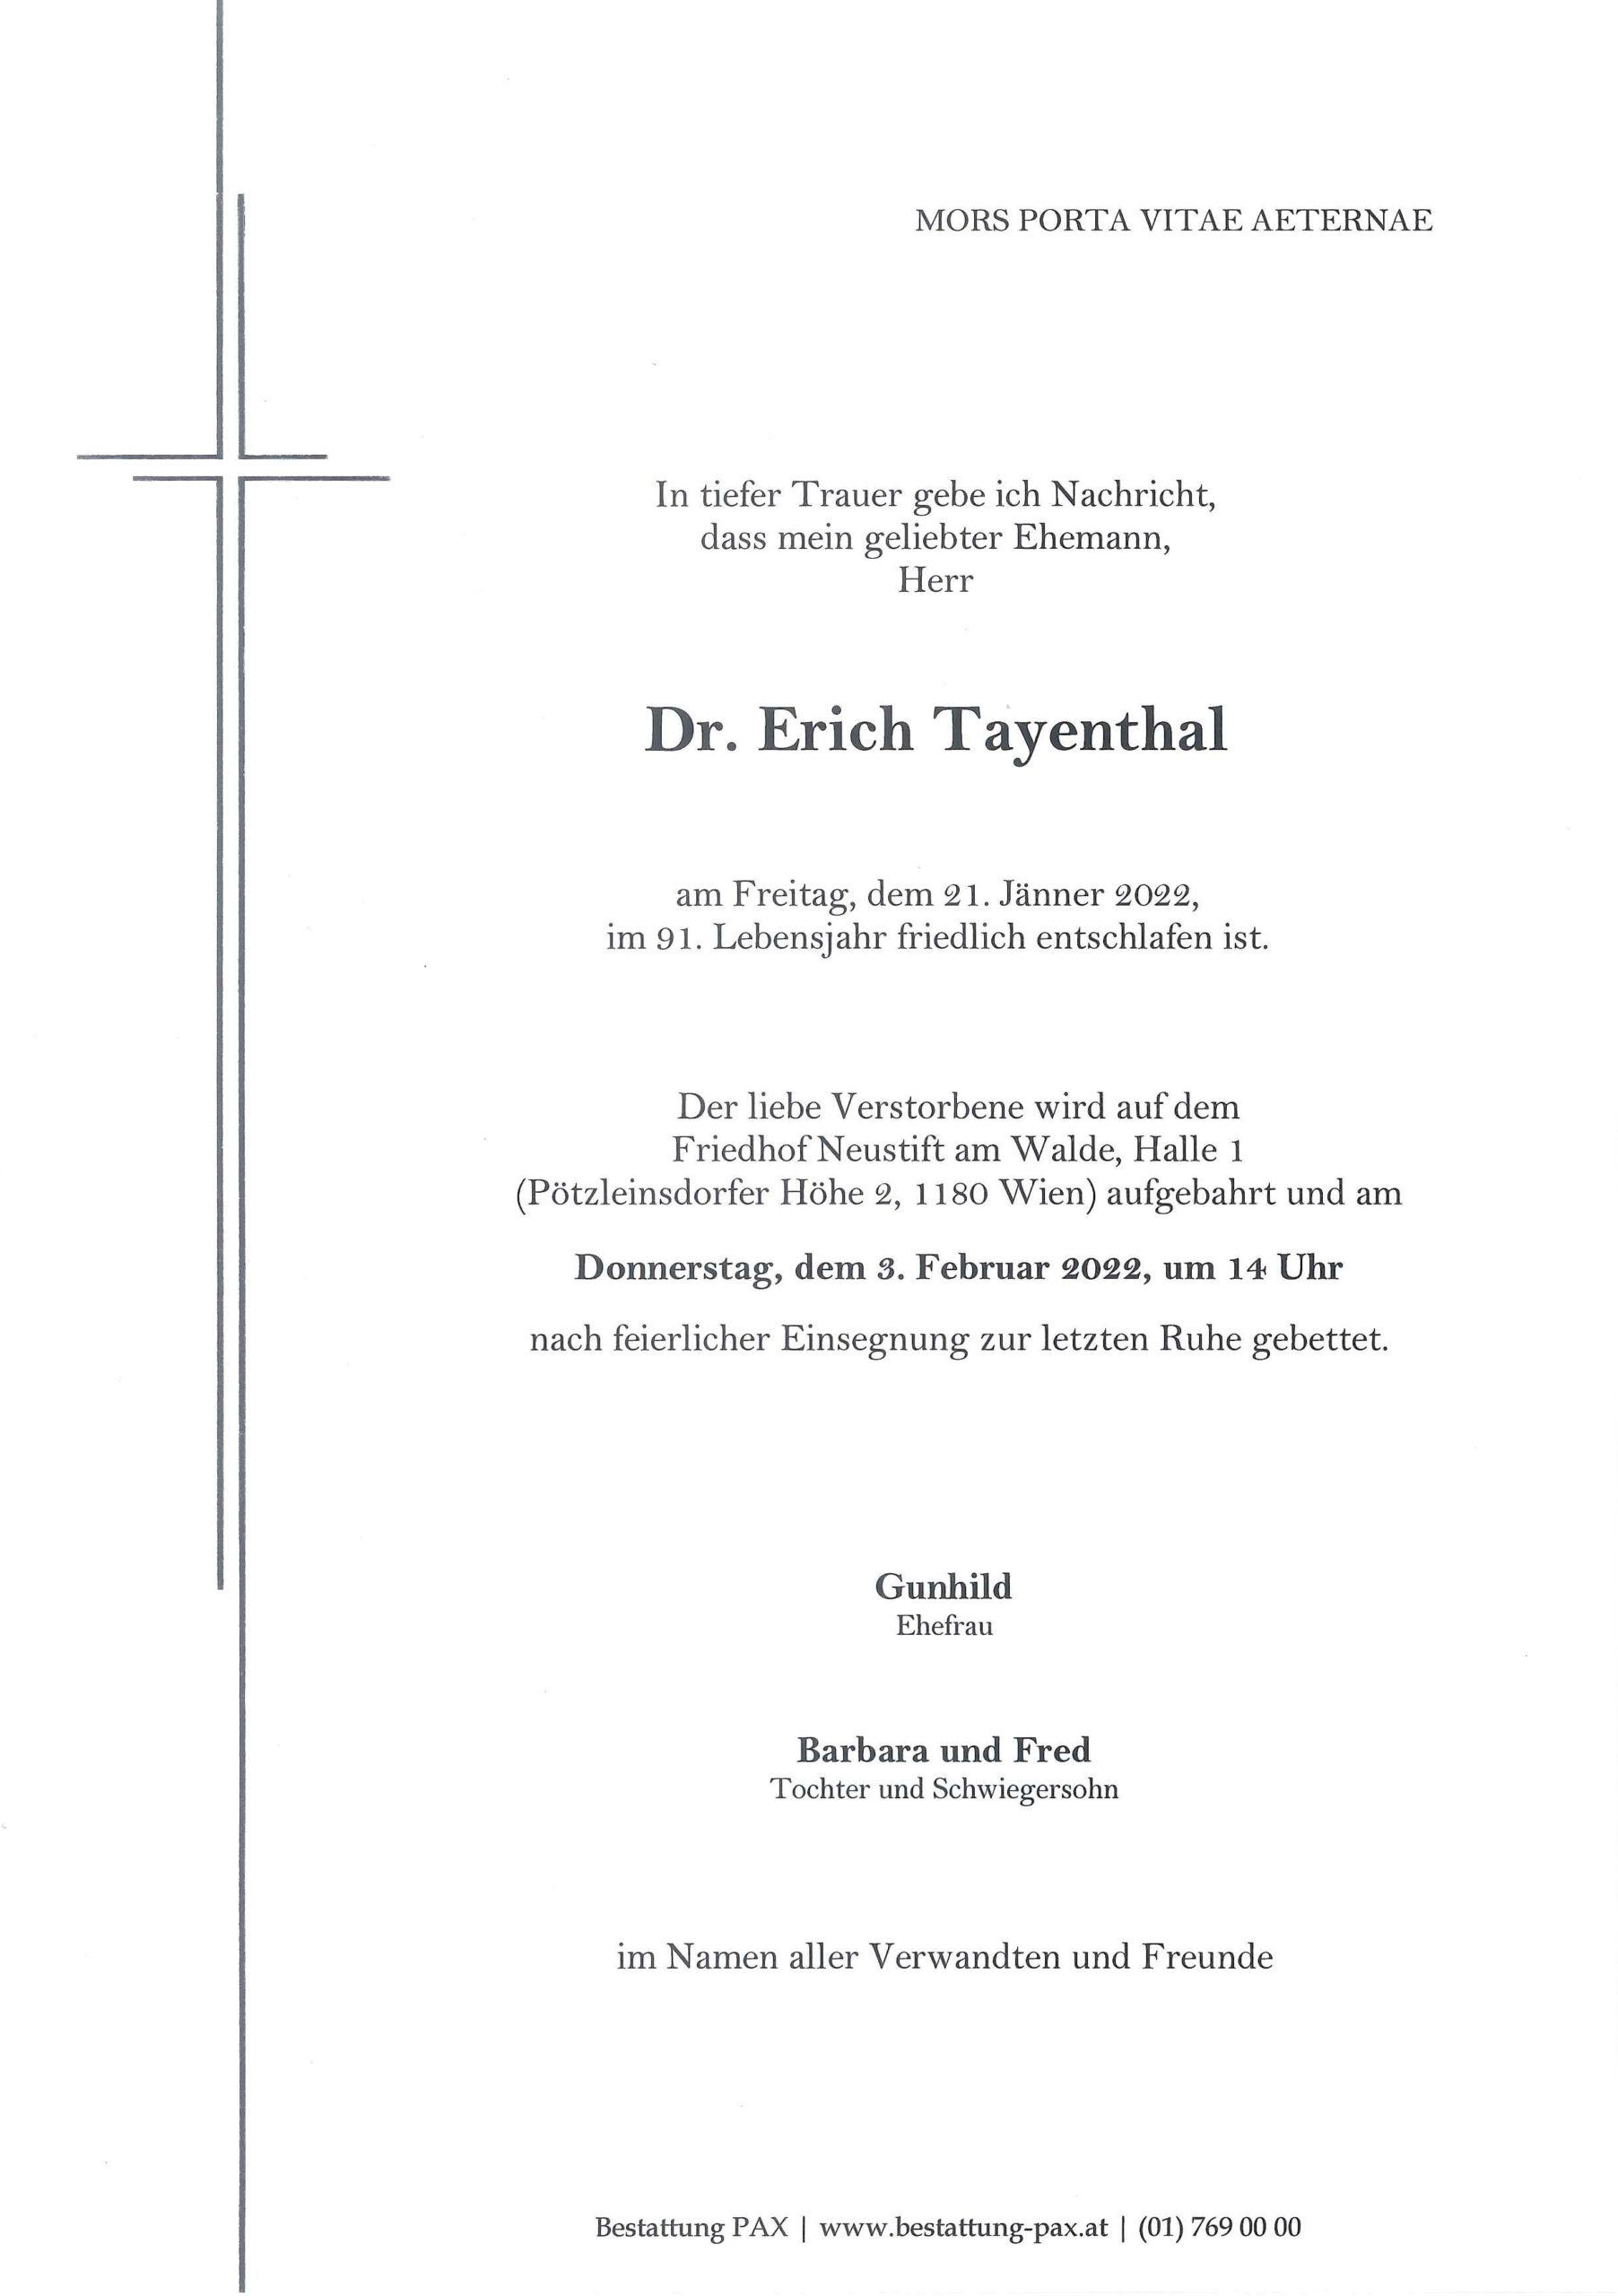 Dr. Erich Tayenthal